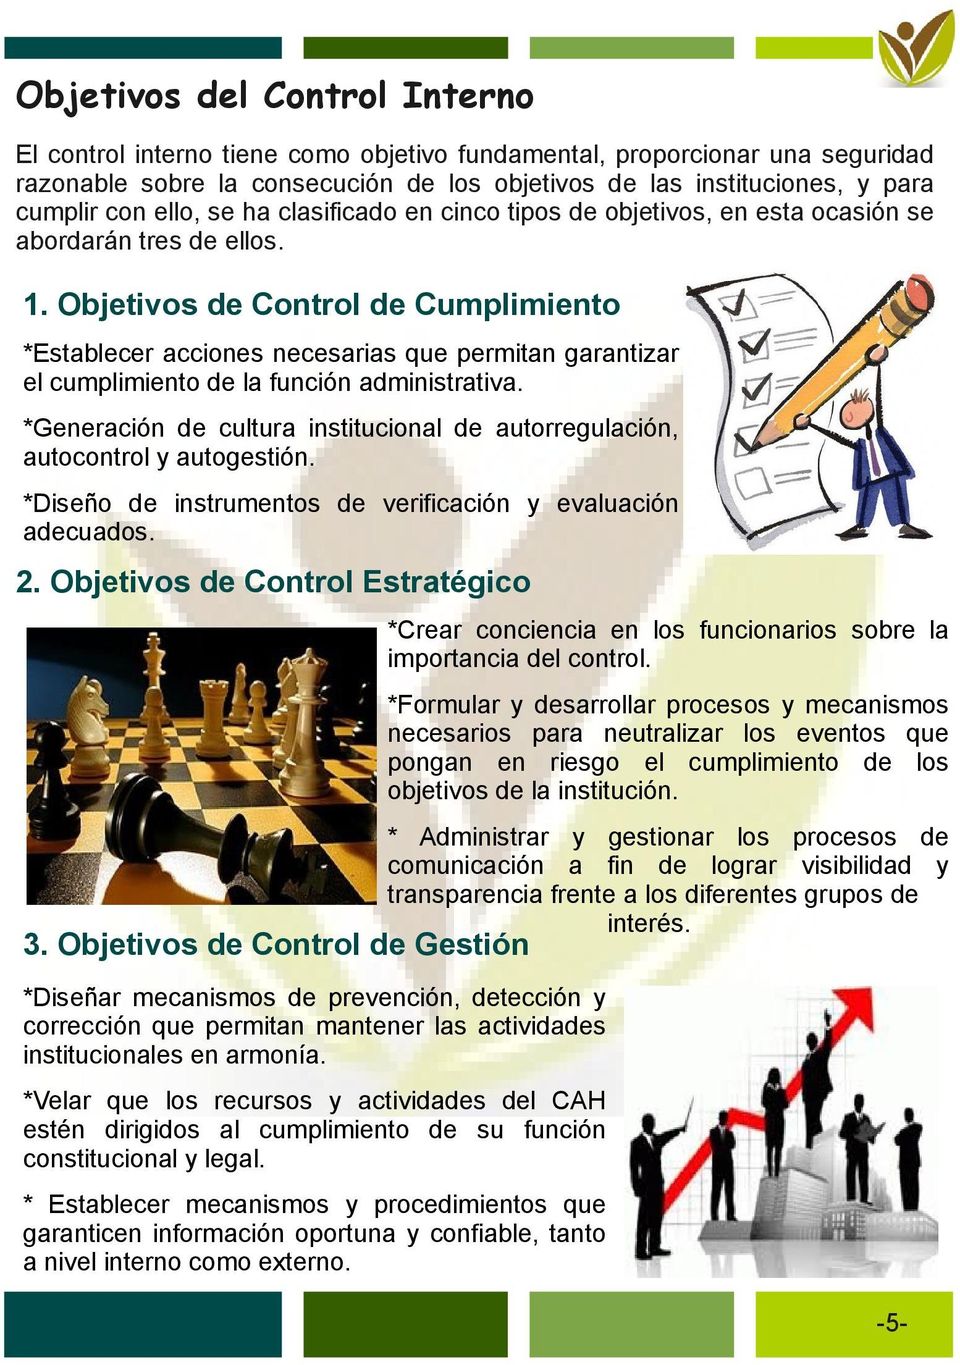 Objetivos Control Cumplimiento *Establecer acciones necesarias que permitan garantizar el cumplimiento la función administrativa.